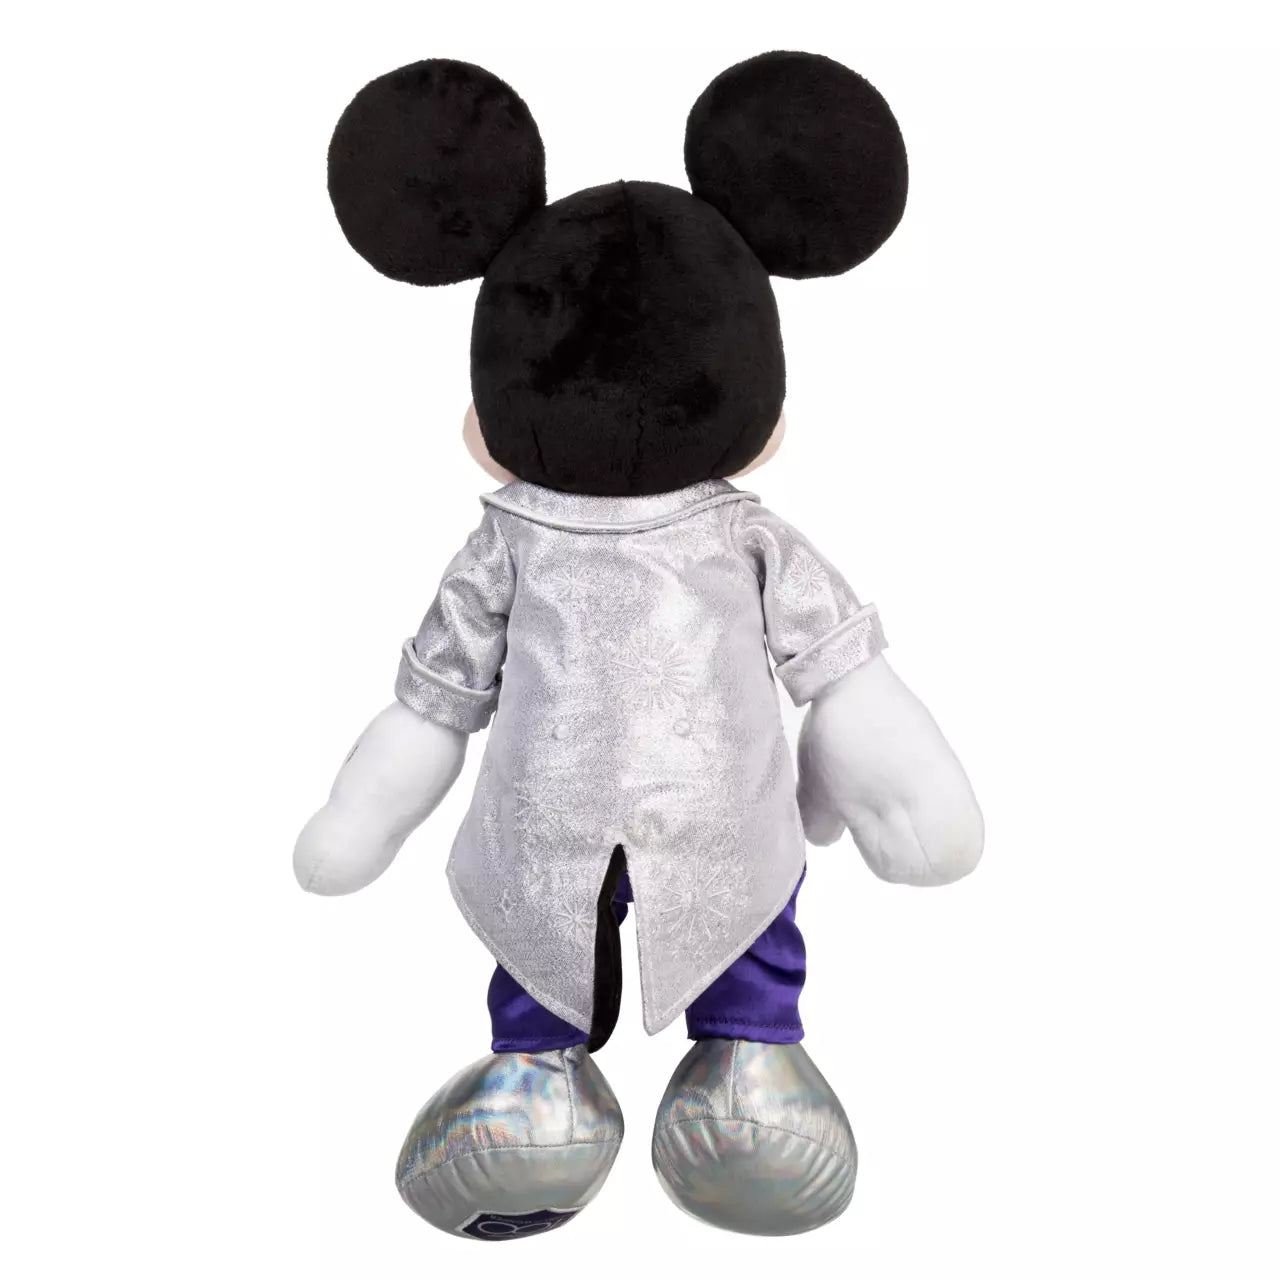 Pelúcia Mickey Minnie Pluto Tico e Teco Original Disney 100 anos em 2023